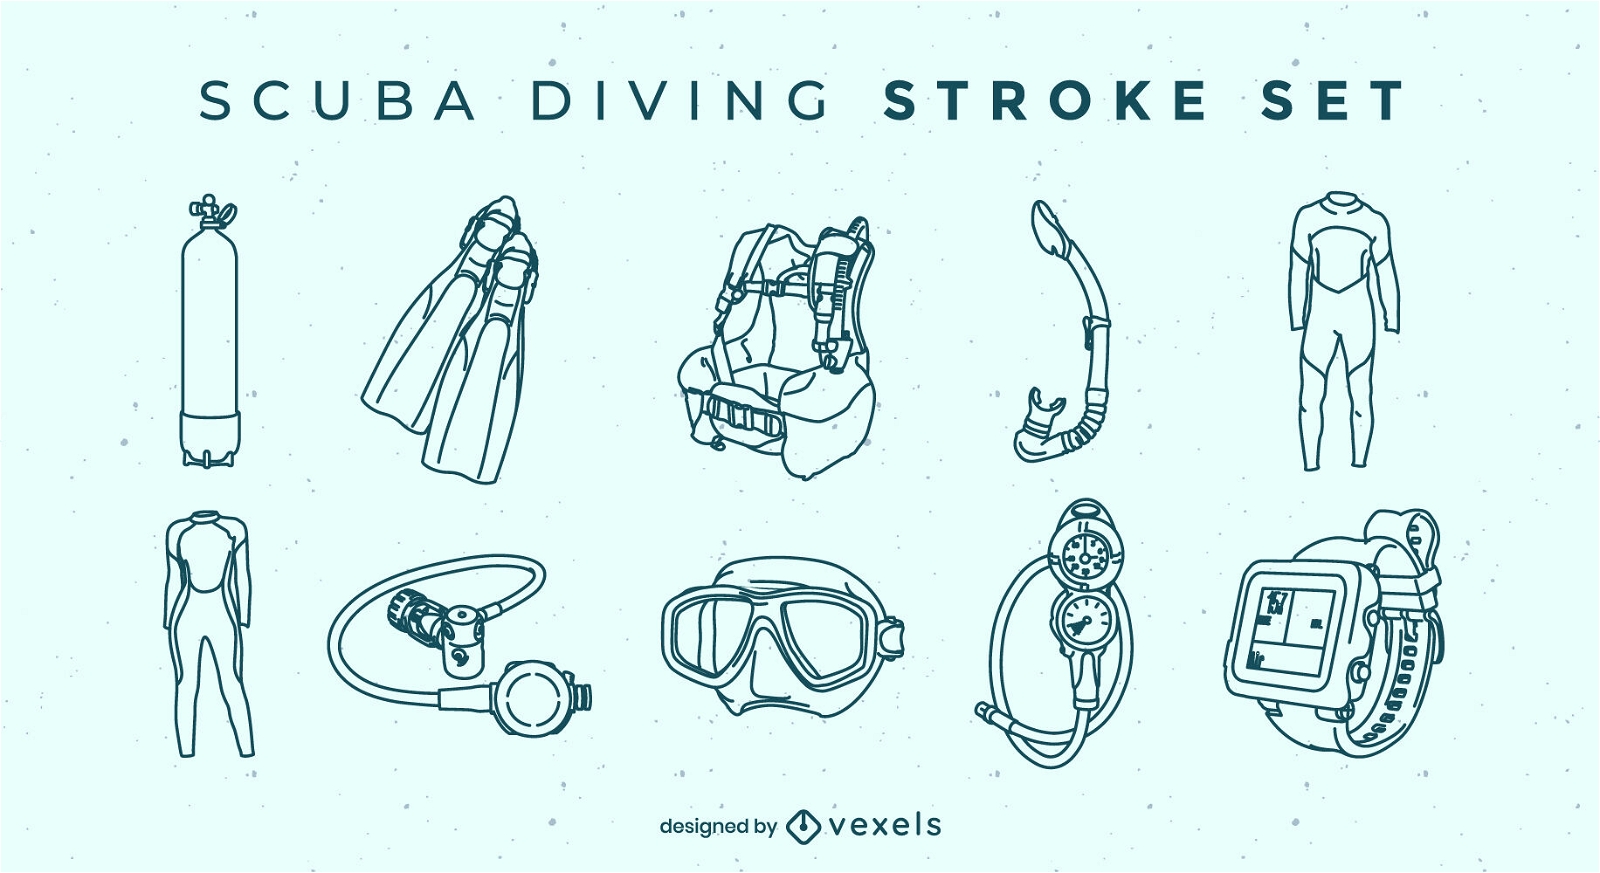 Scuba diving hobby equipment stroke set